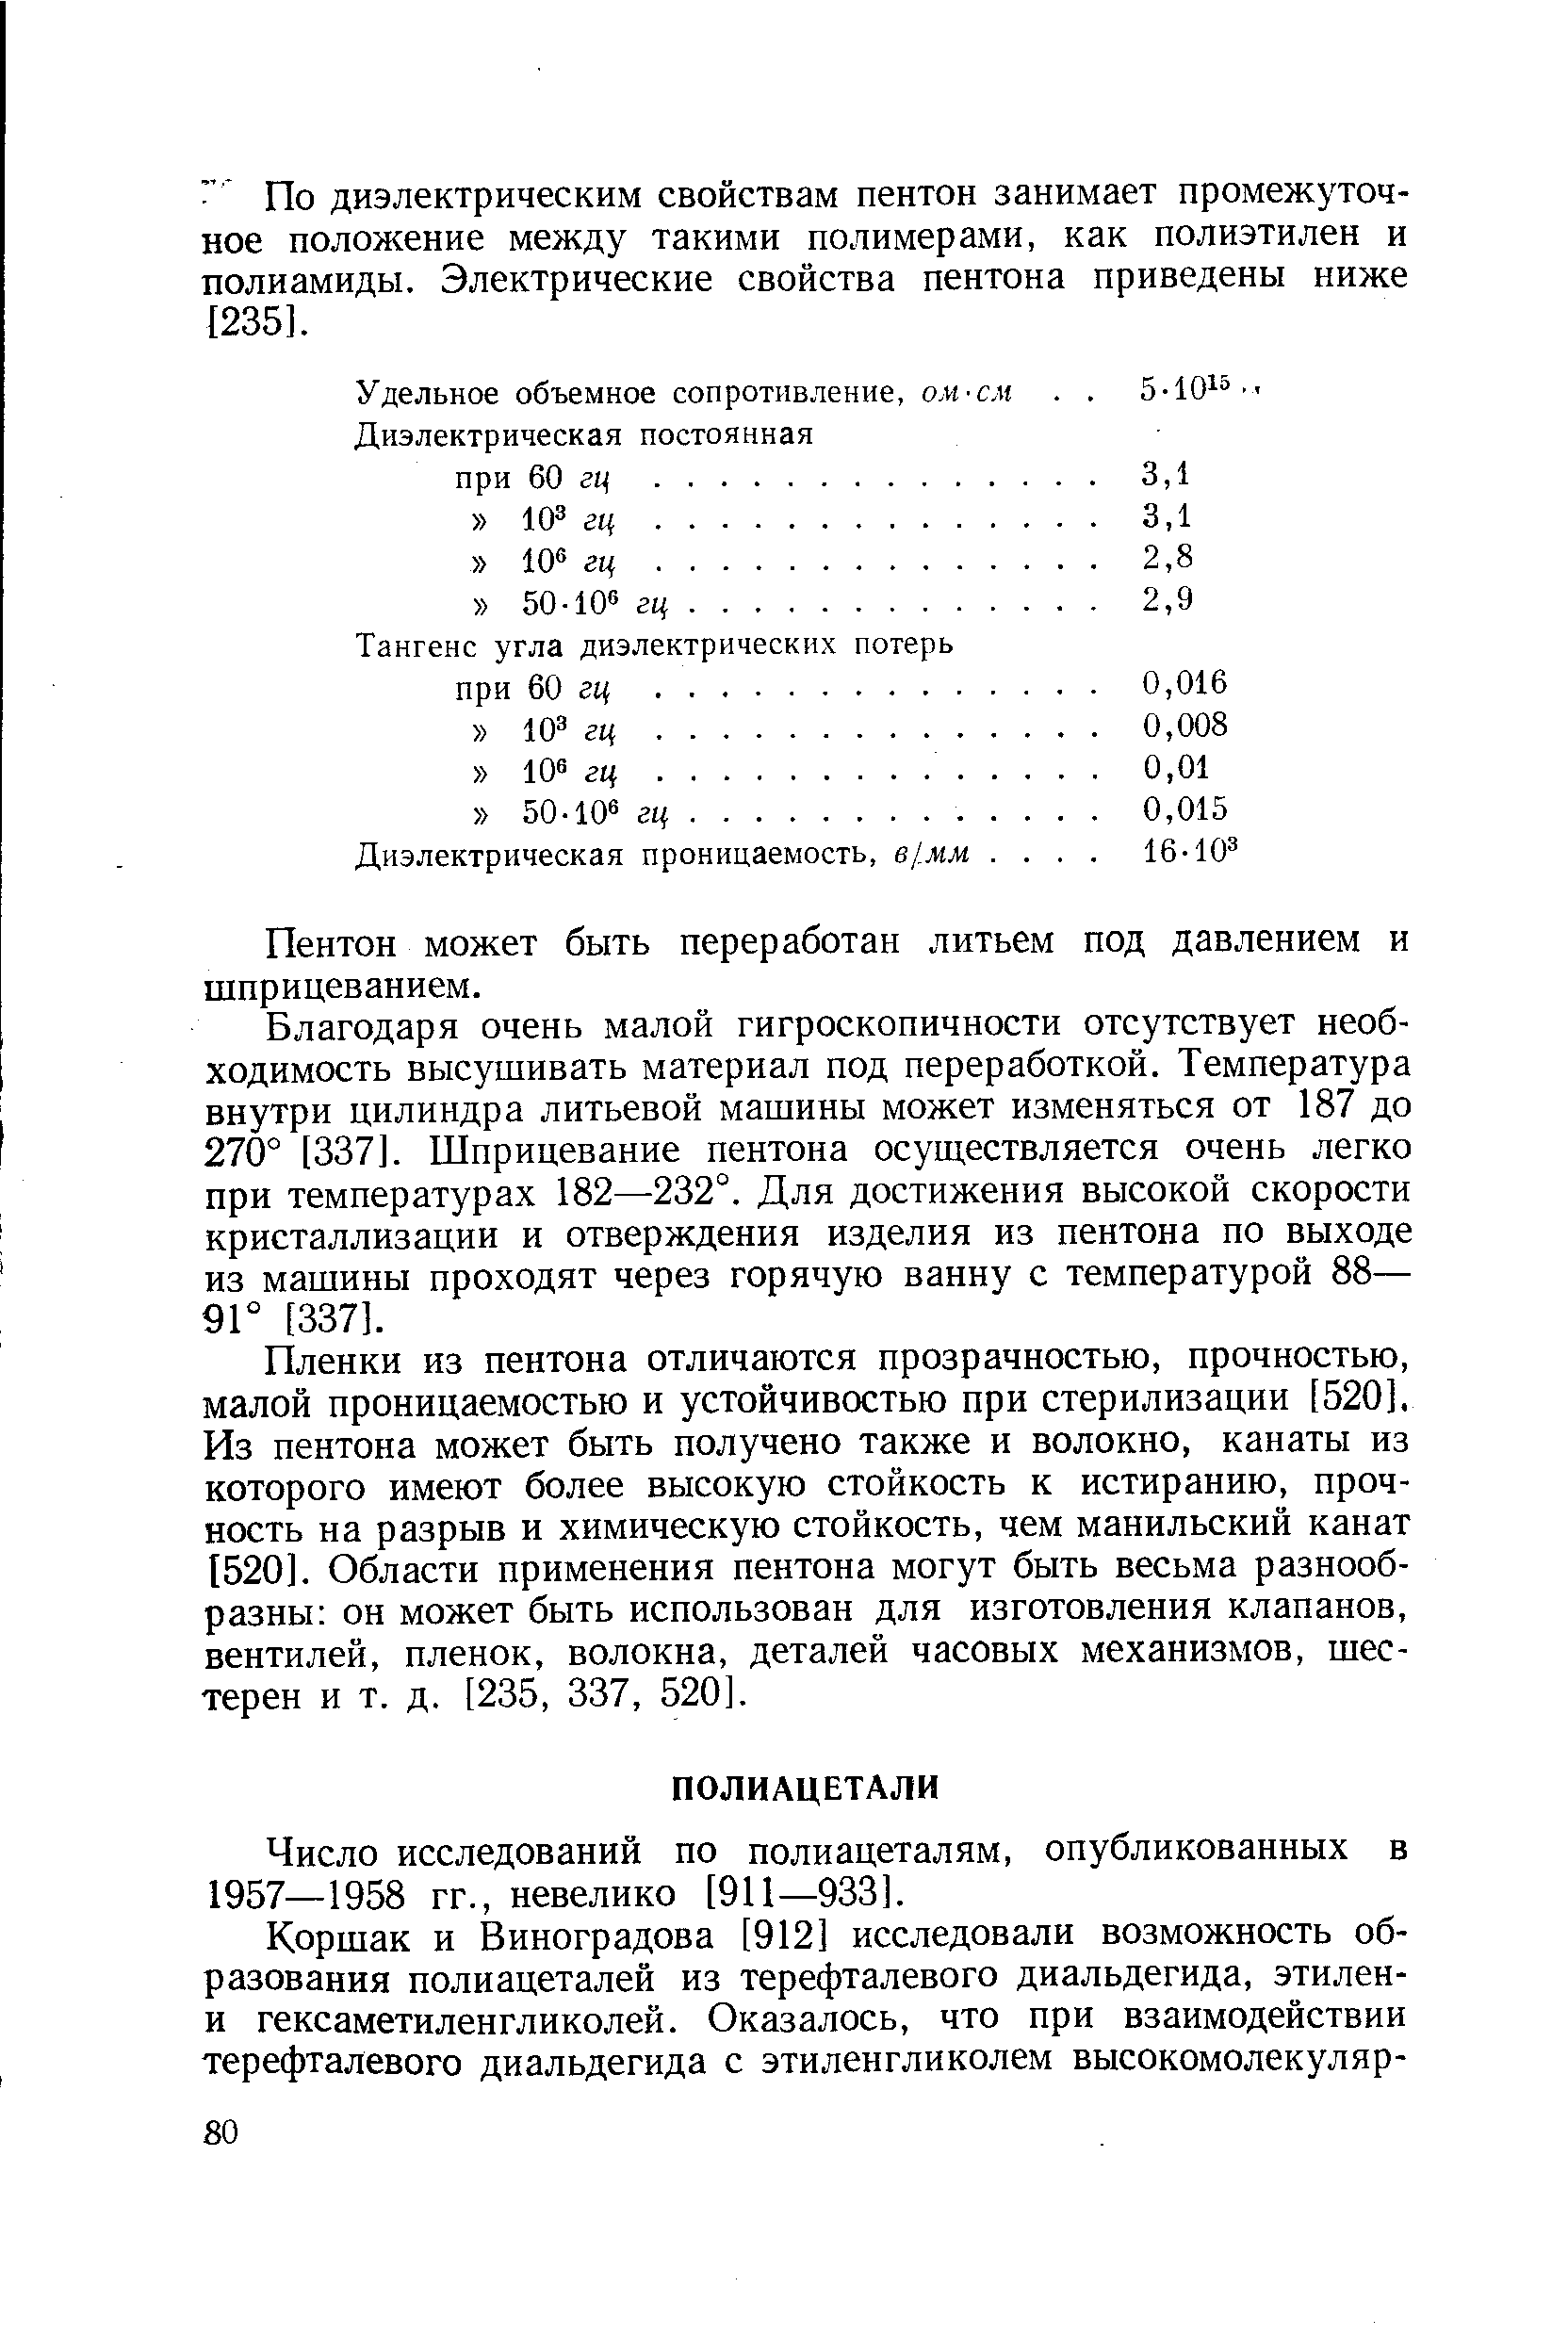 Число исследований по полиацеталям, опубликованных в 1957—1958 гг., невелико [911—933].